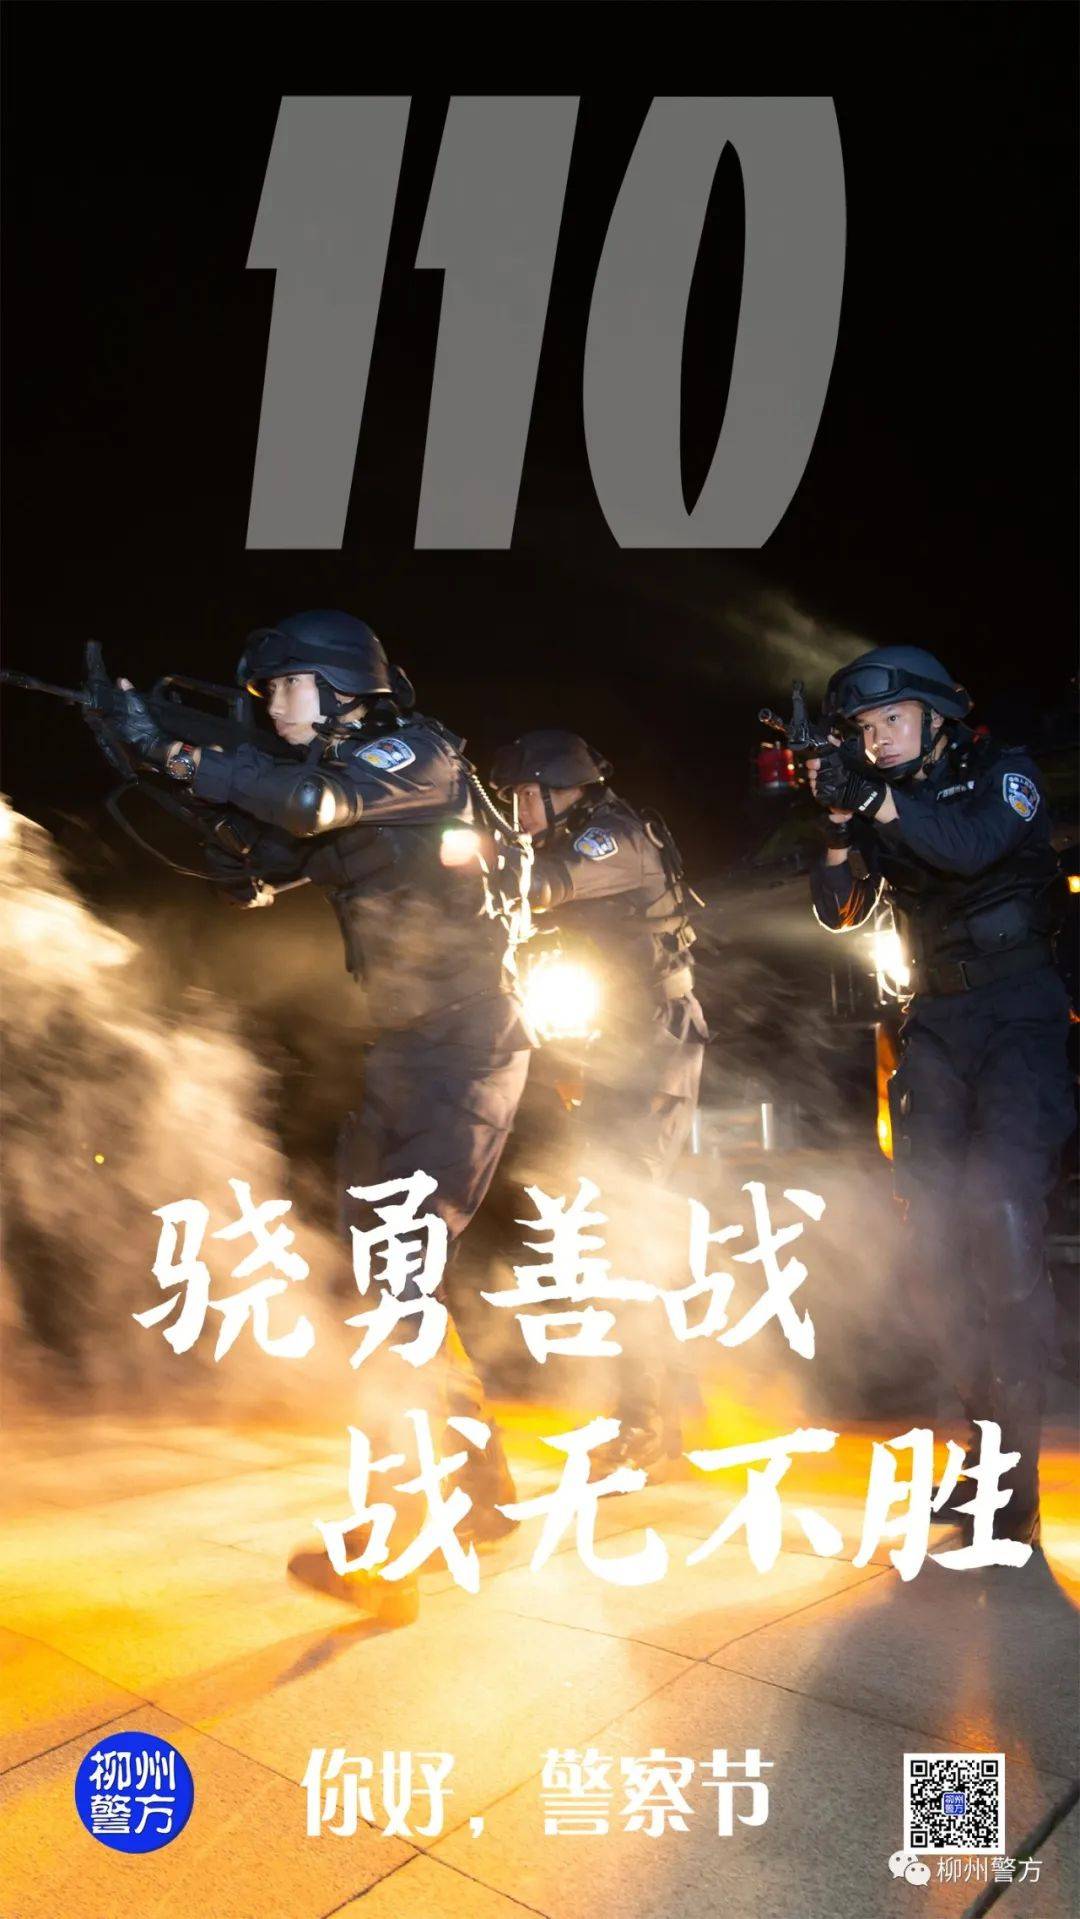 "中国人民警察节 柳州警方特别策划 推出"你好,警察节"系列宣传海报